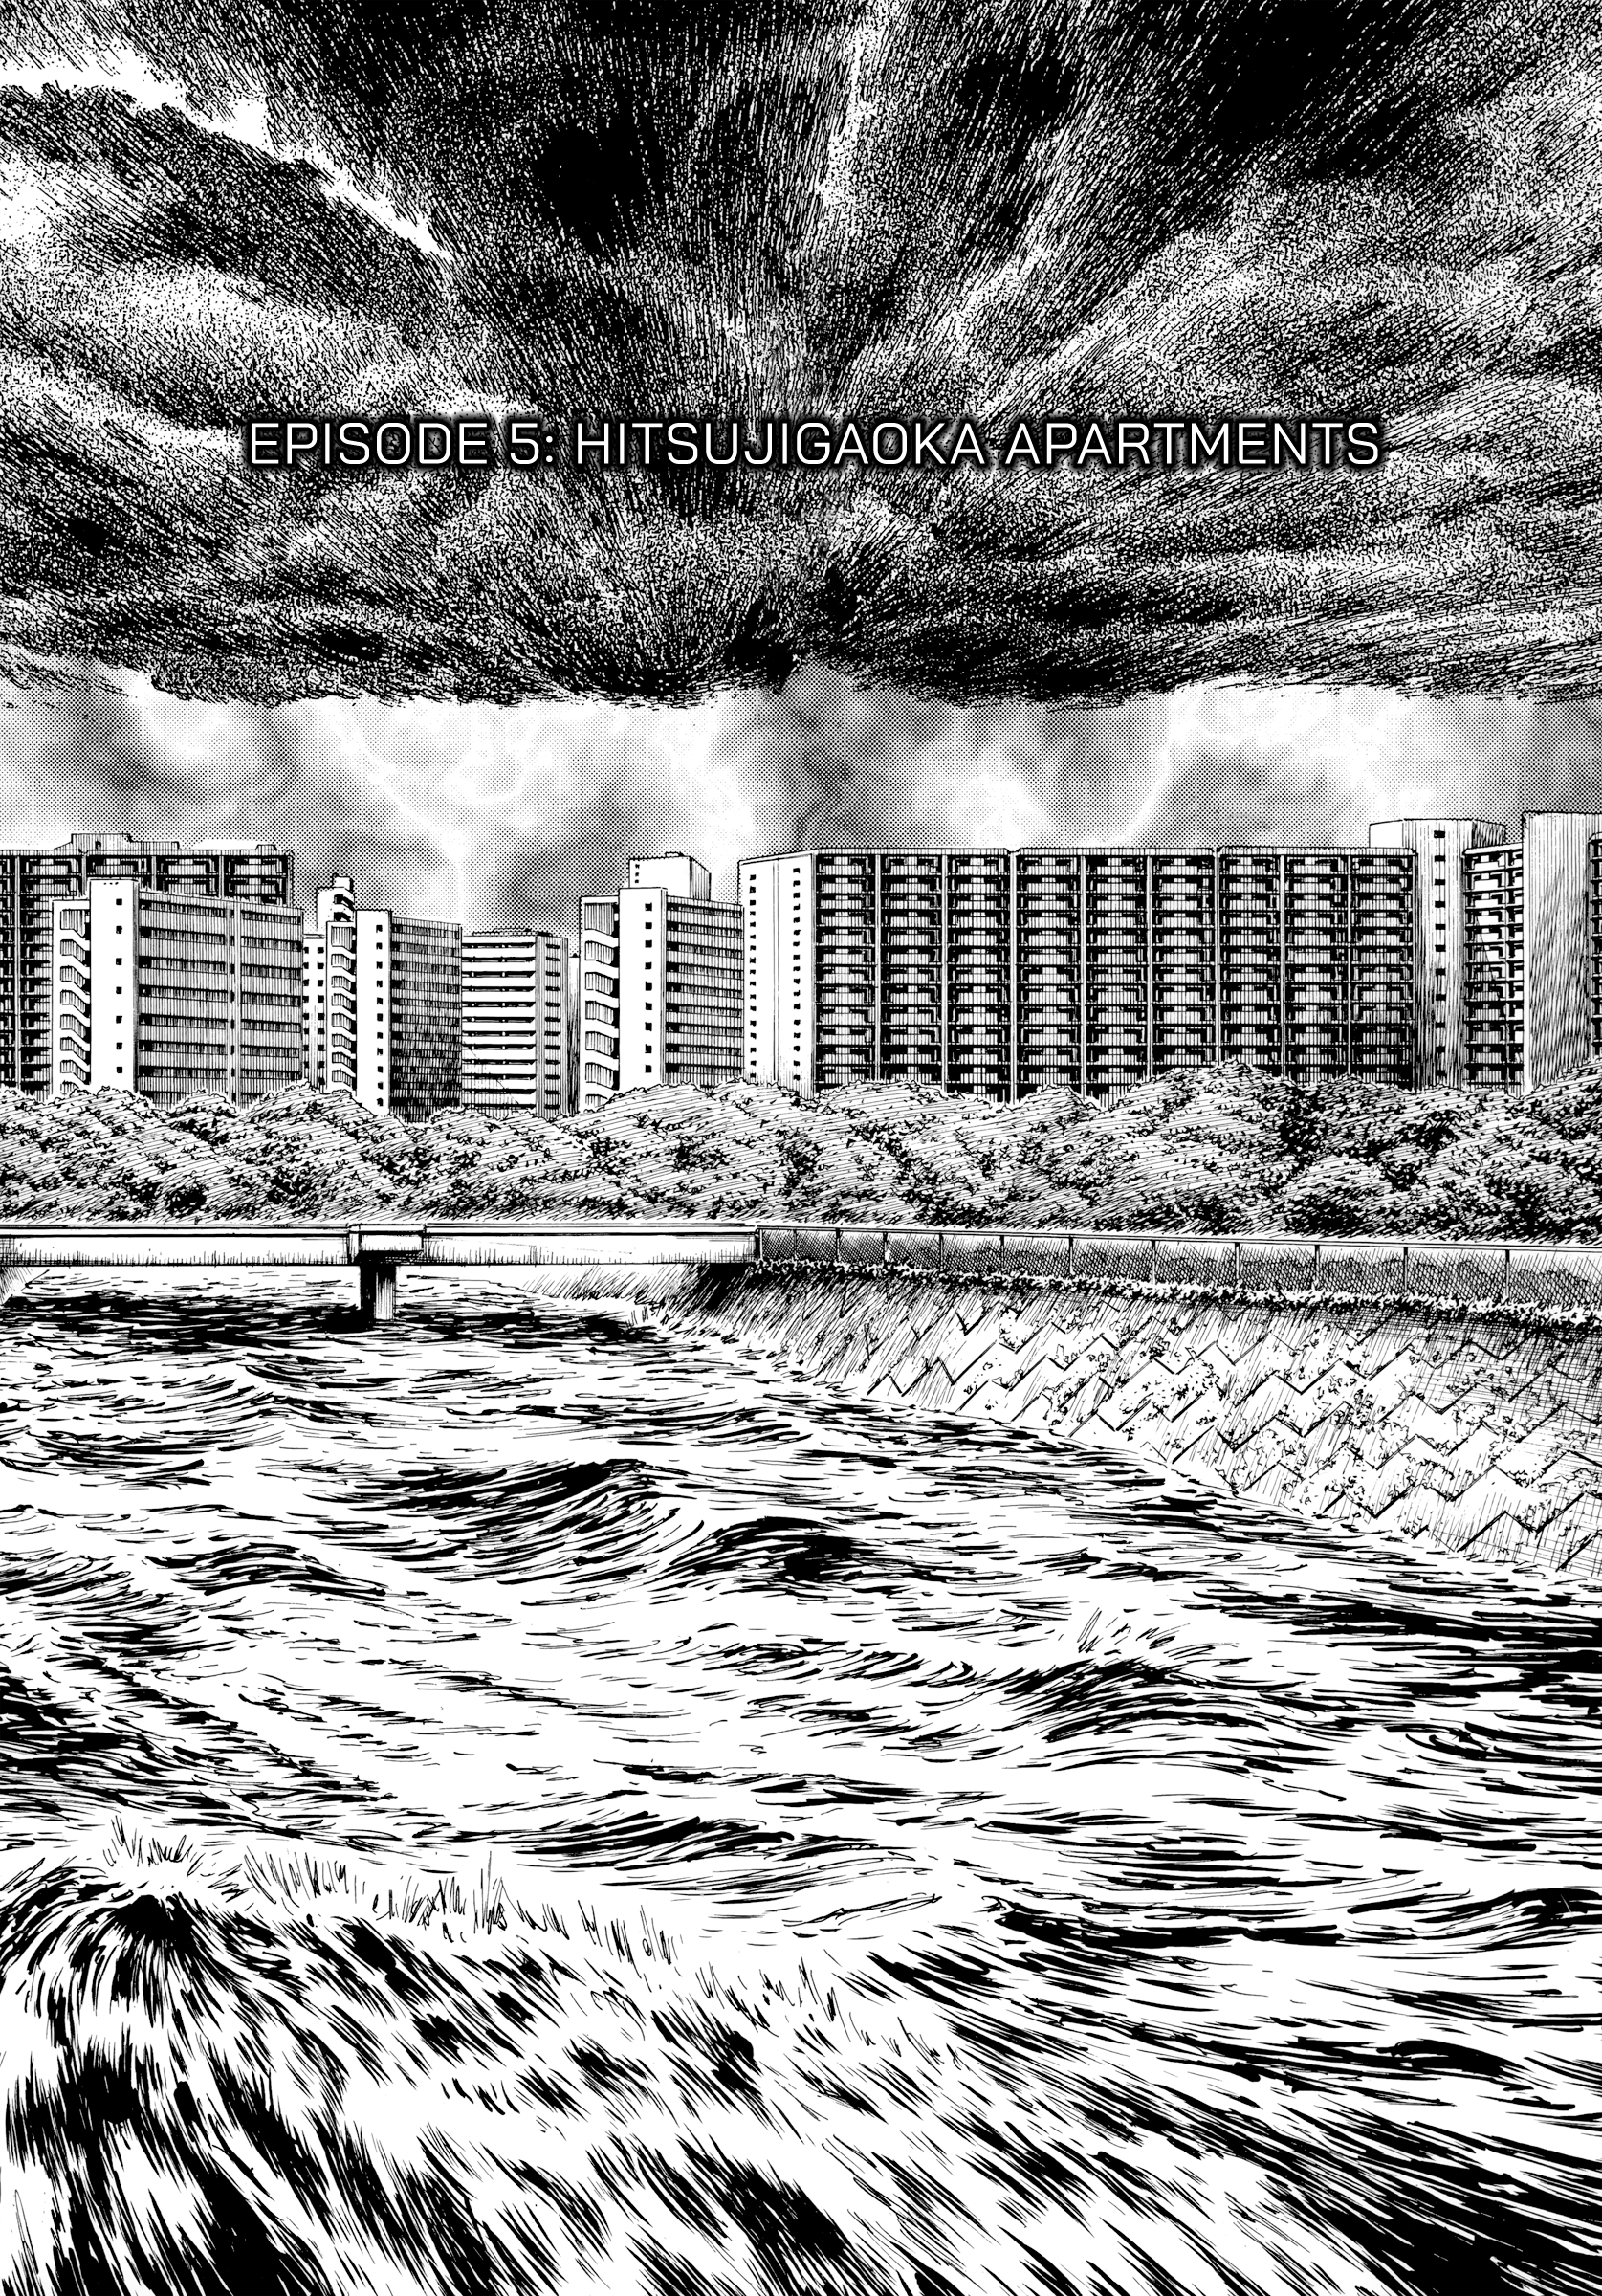 Rain Man Vol.1 Chapter 5: Hitsujigaoka Apartments - Picture 1